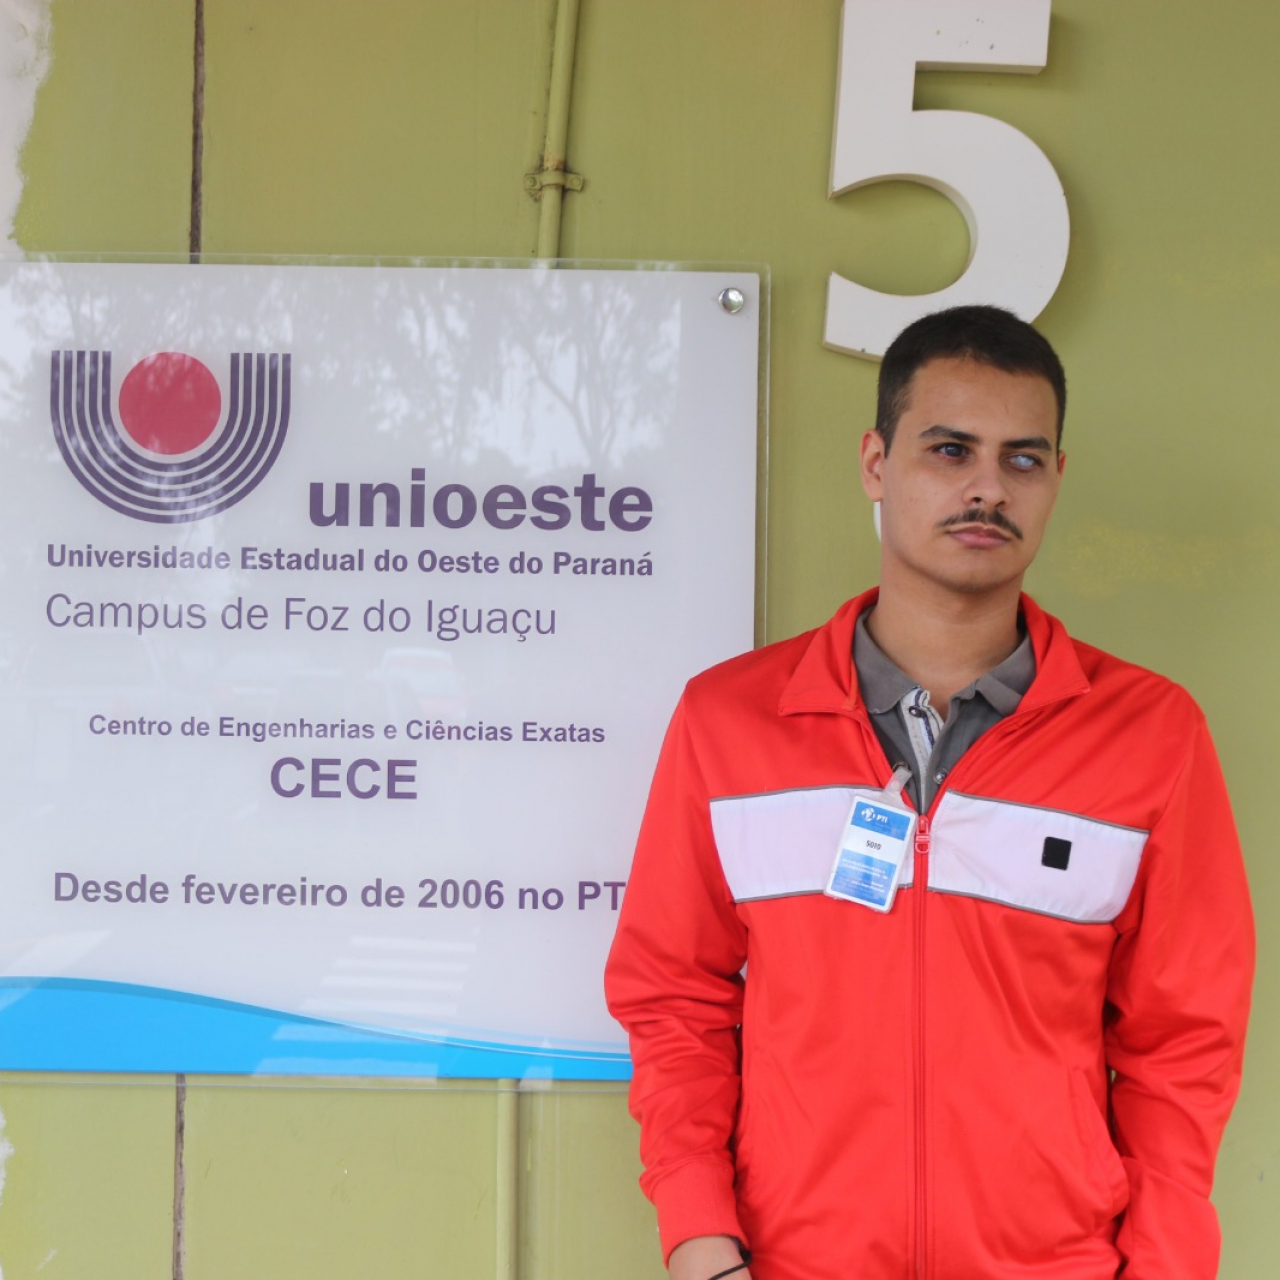 Unioeste: aluno com deficiência visual realiza sonho de entrar na universidade